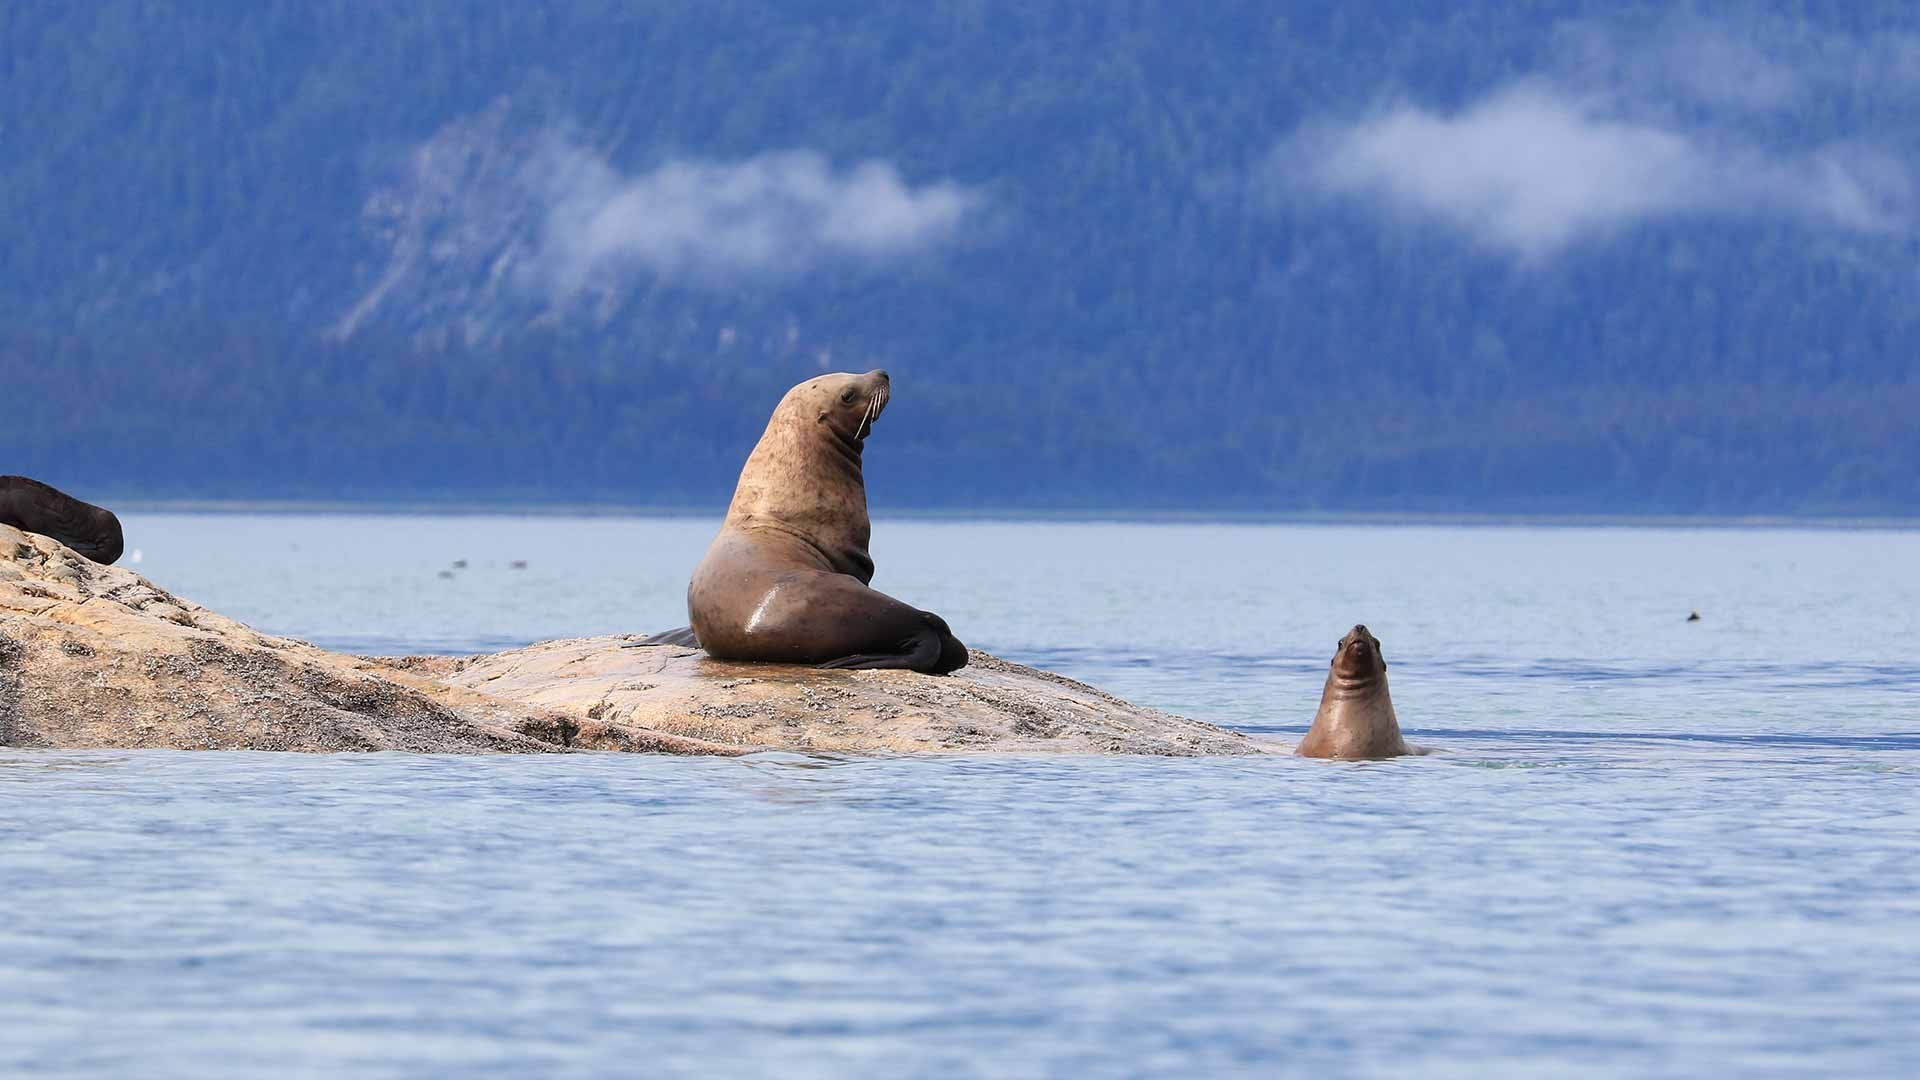 Two seals sea action wildlife